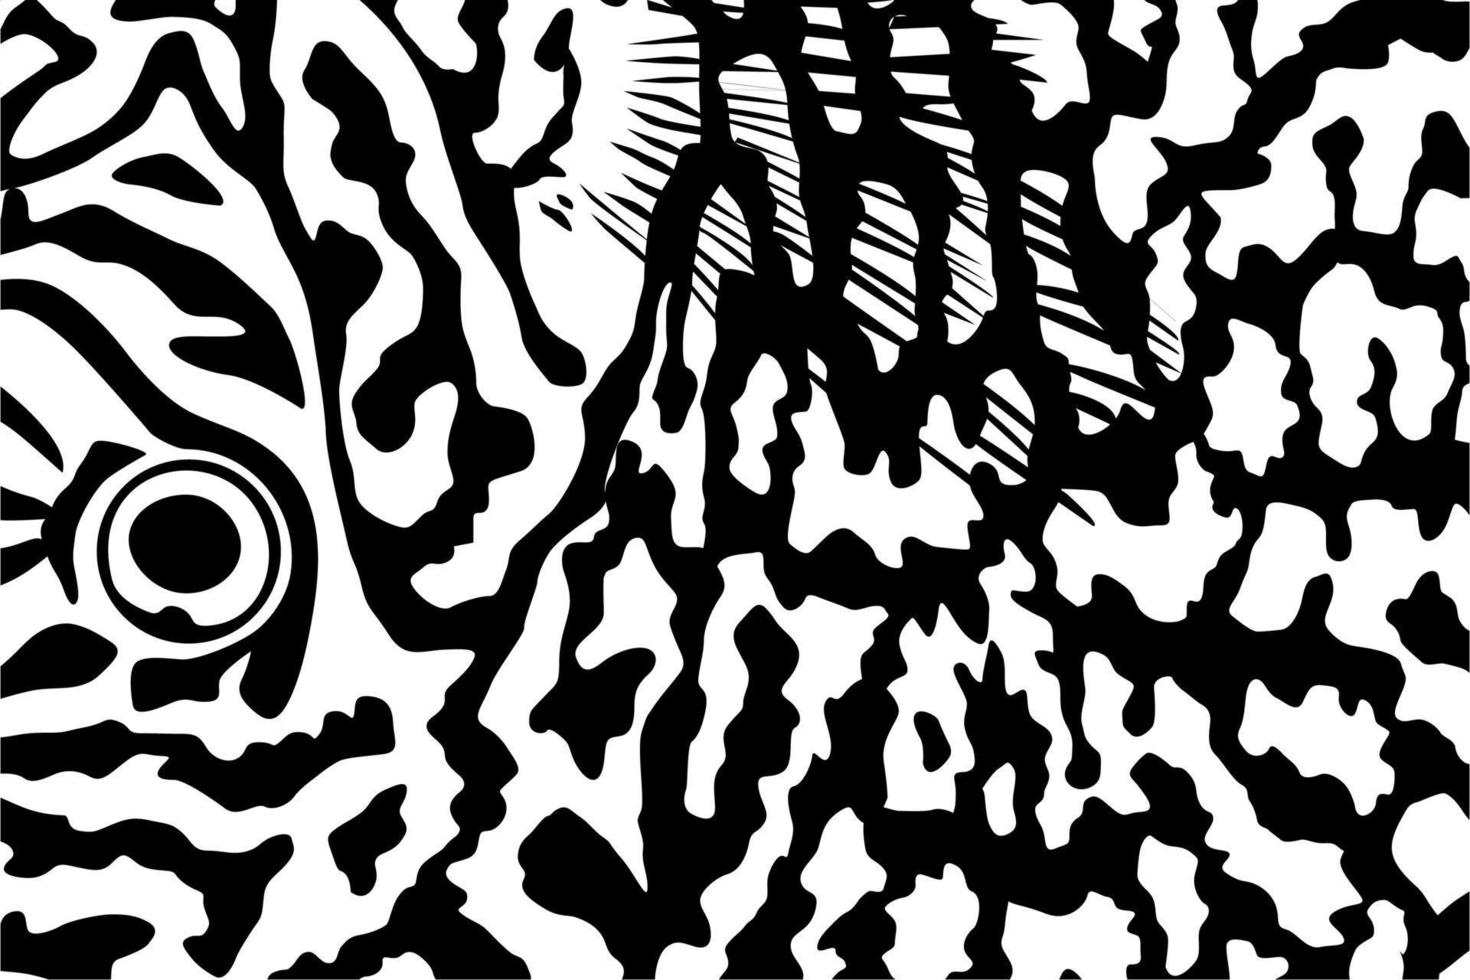 künstlerisch Motive Muster inspiriert durch symphysodon oder Diskus Fisch, zum Dekoration, aufwendig, Hintergrund, Webseite, Hintergrund, Mode, Innere, Abdeckung, Tier drucken, oder Grafik Design Element vektor